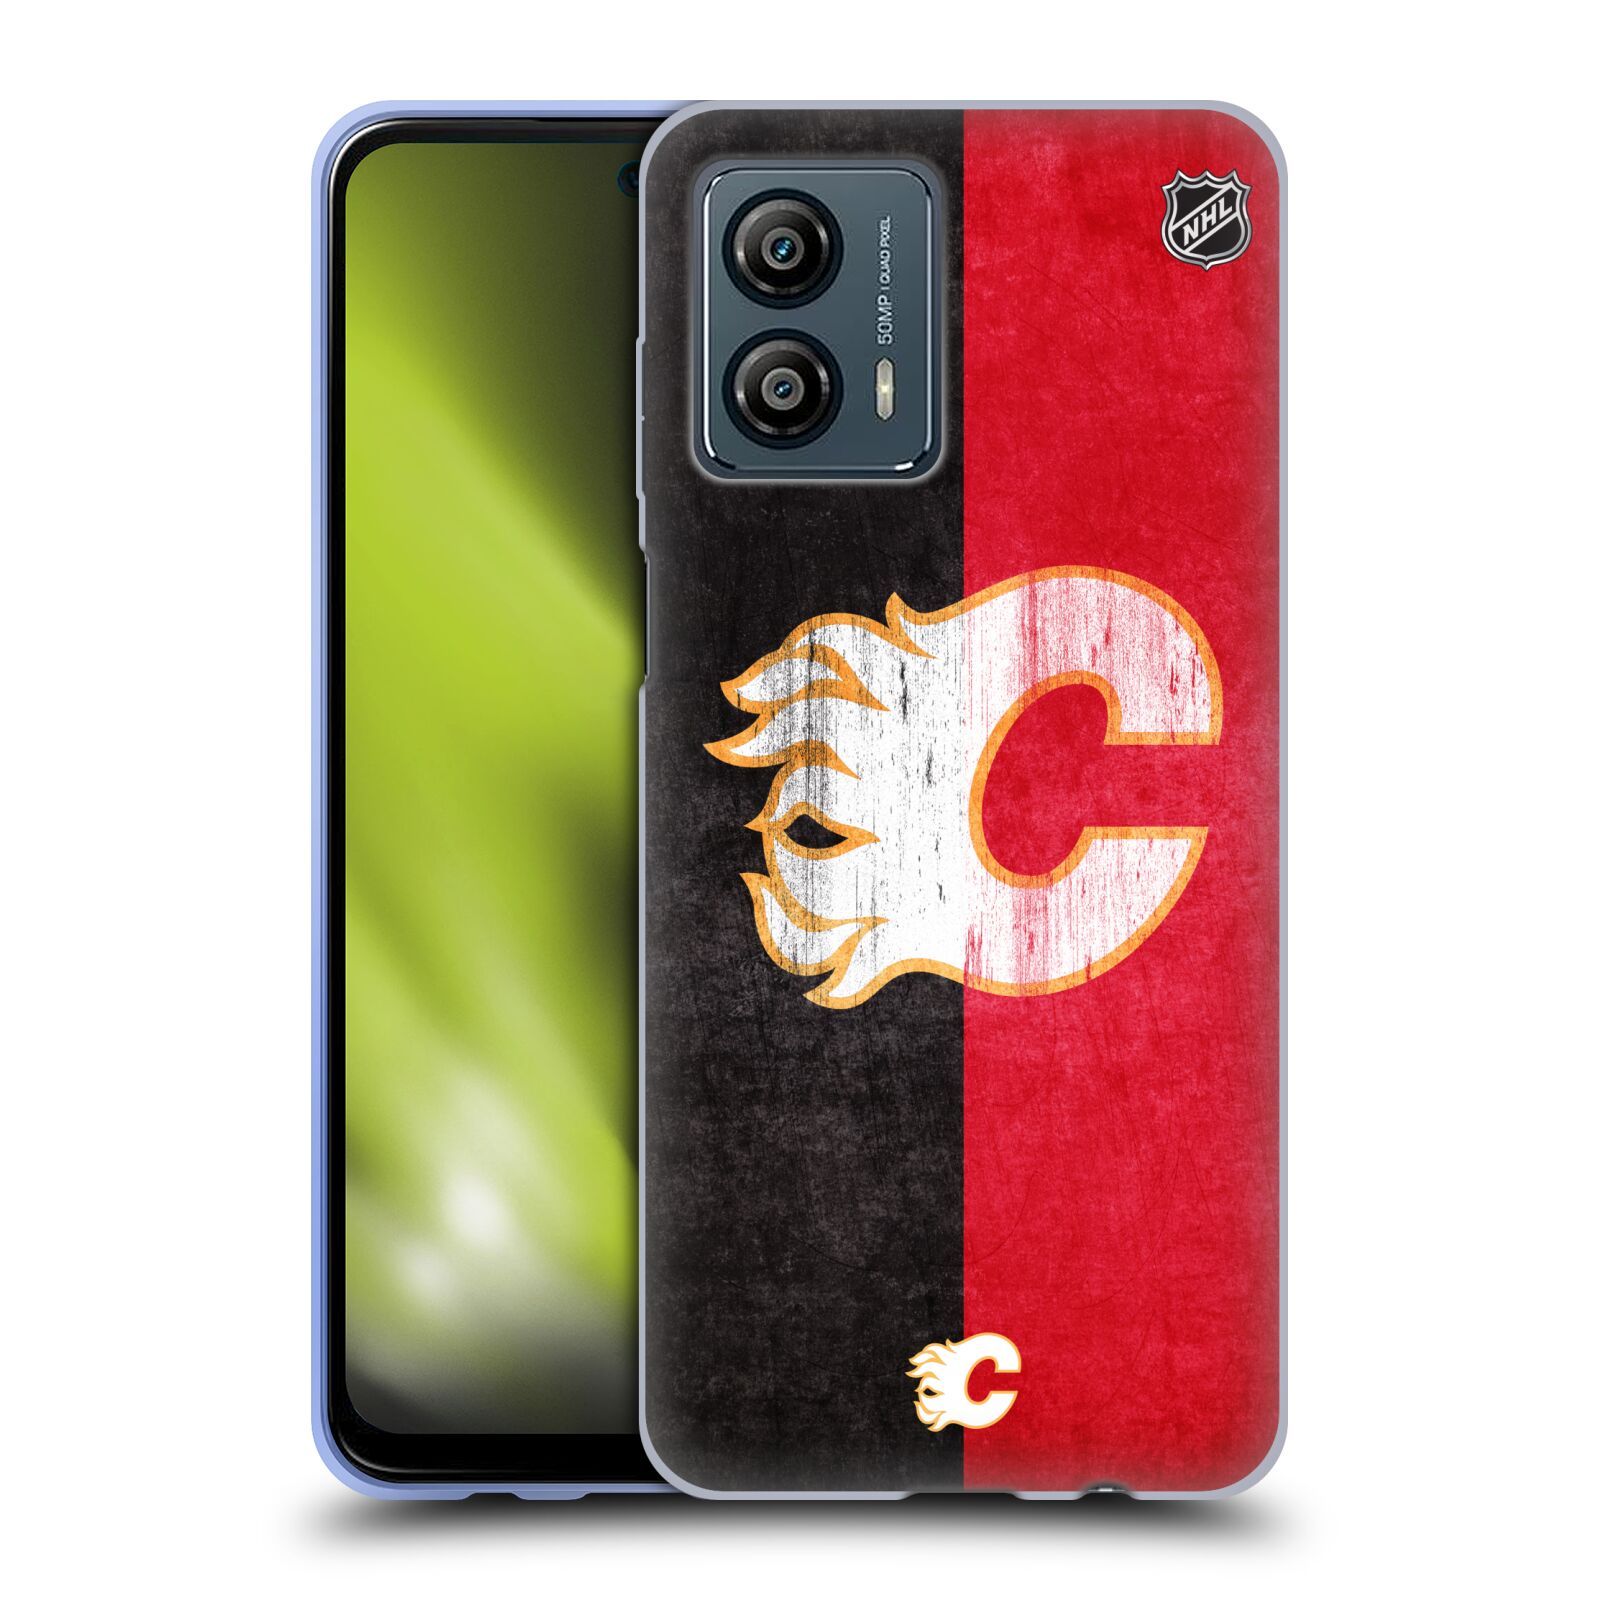 Silikonové pouzdro na mobil Motorola Moto G53 5G - NHL - Půlené logo Calgary Flames (Silikonový kryt, obal, pouzdro na mobilní telefon Motorola Moto G53 5G s licencovaným motivem NHL - Půlené logo Calgary Flames)